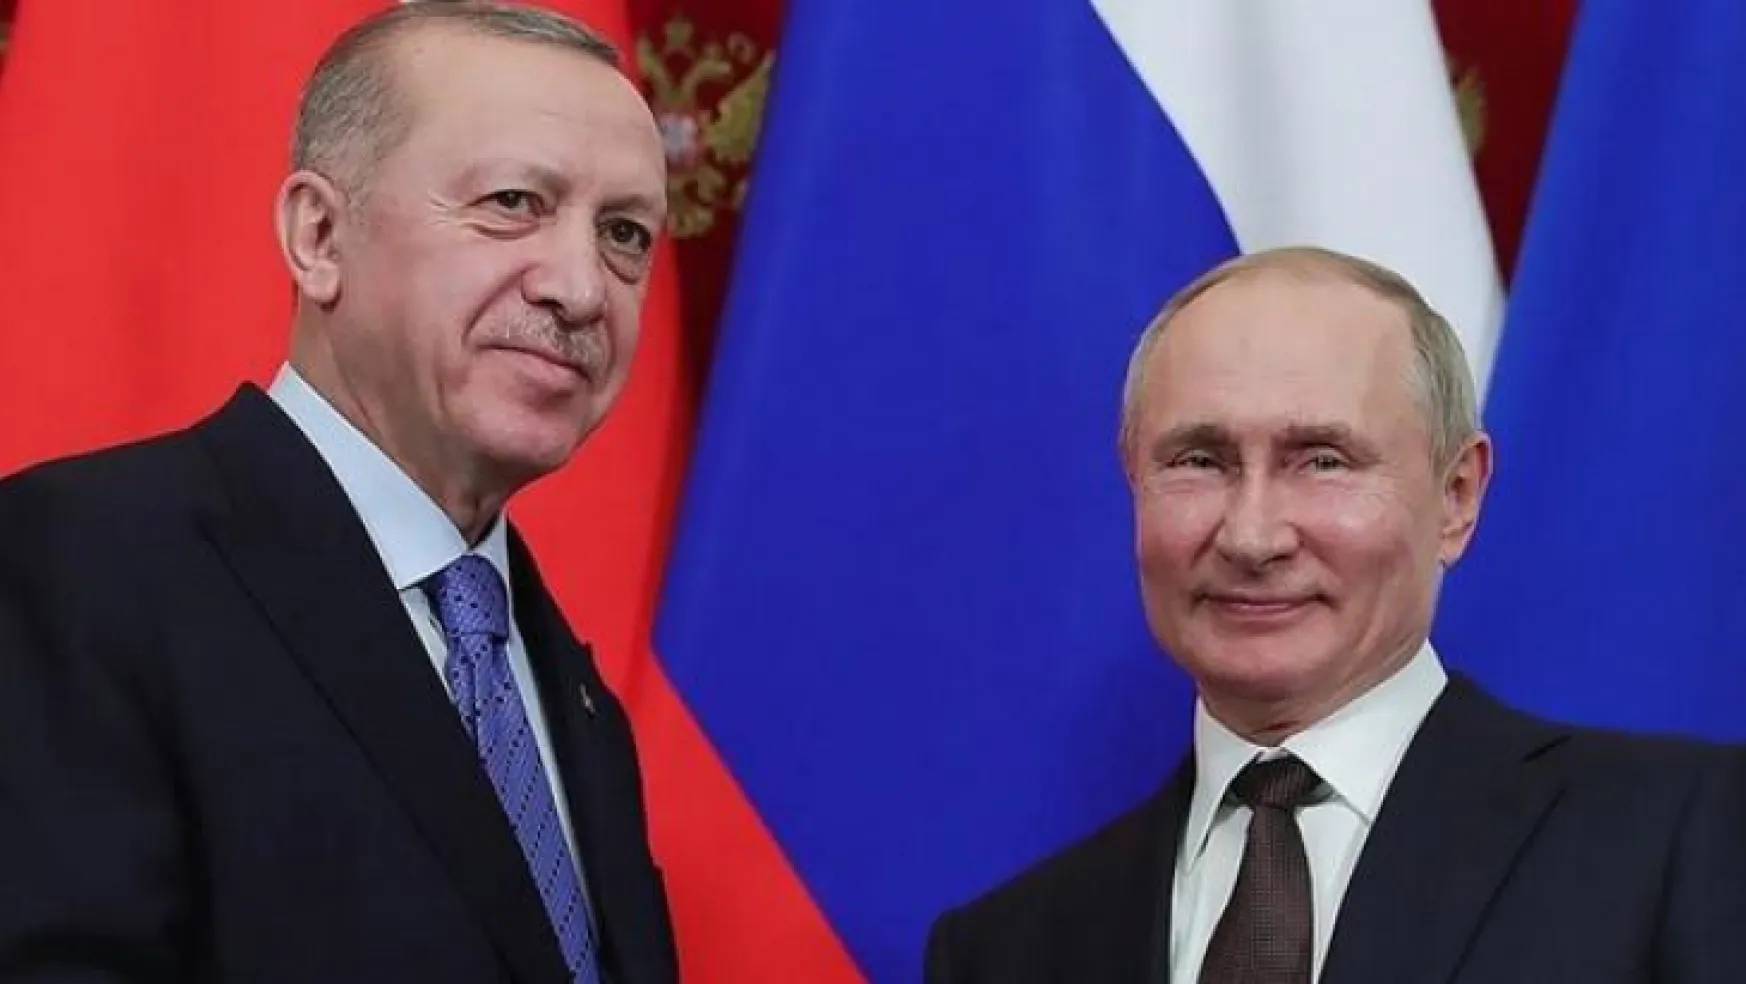 Cumhurbaşkanı Erdoğan Putin ile görüştü